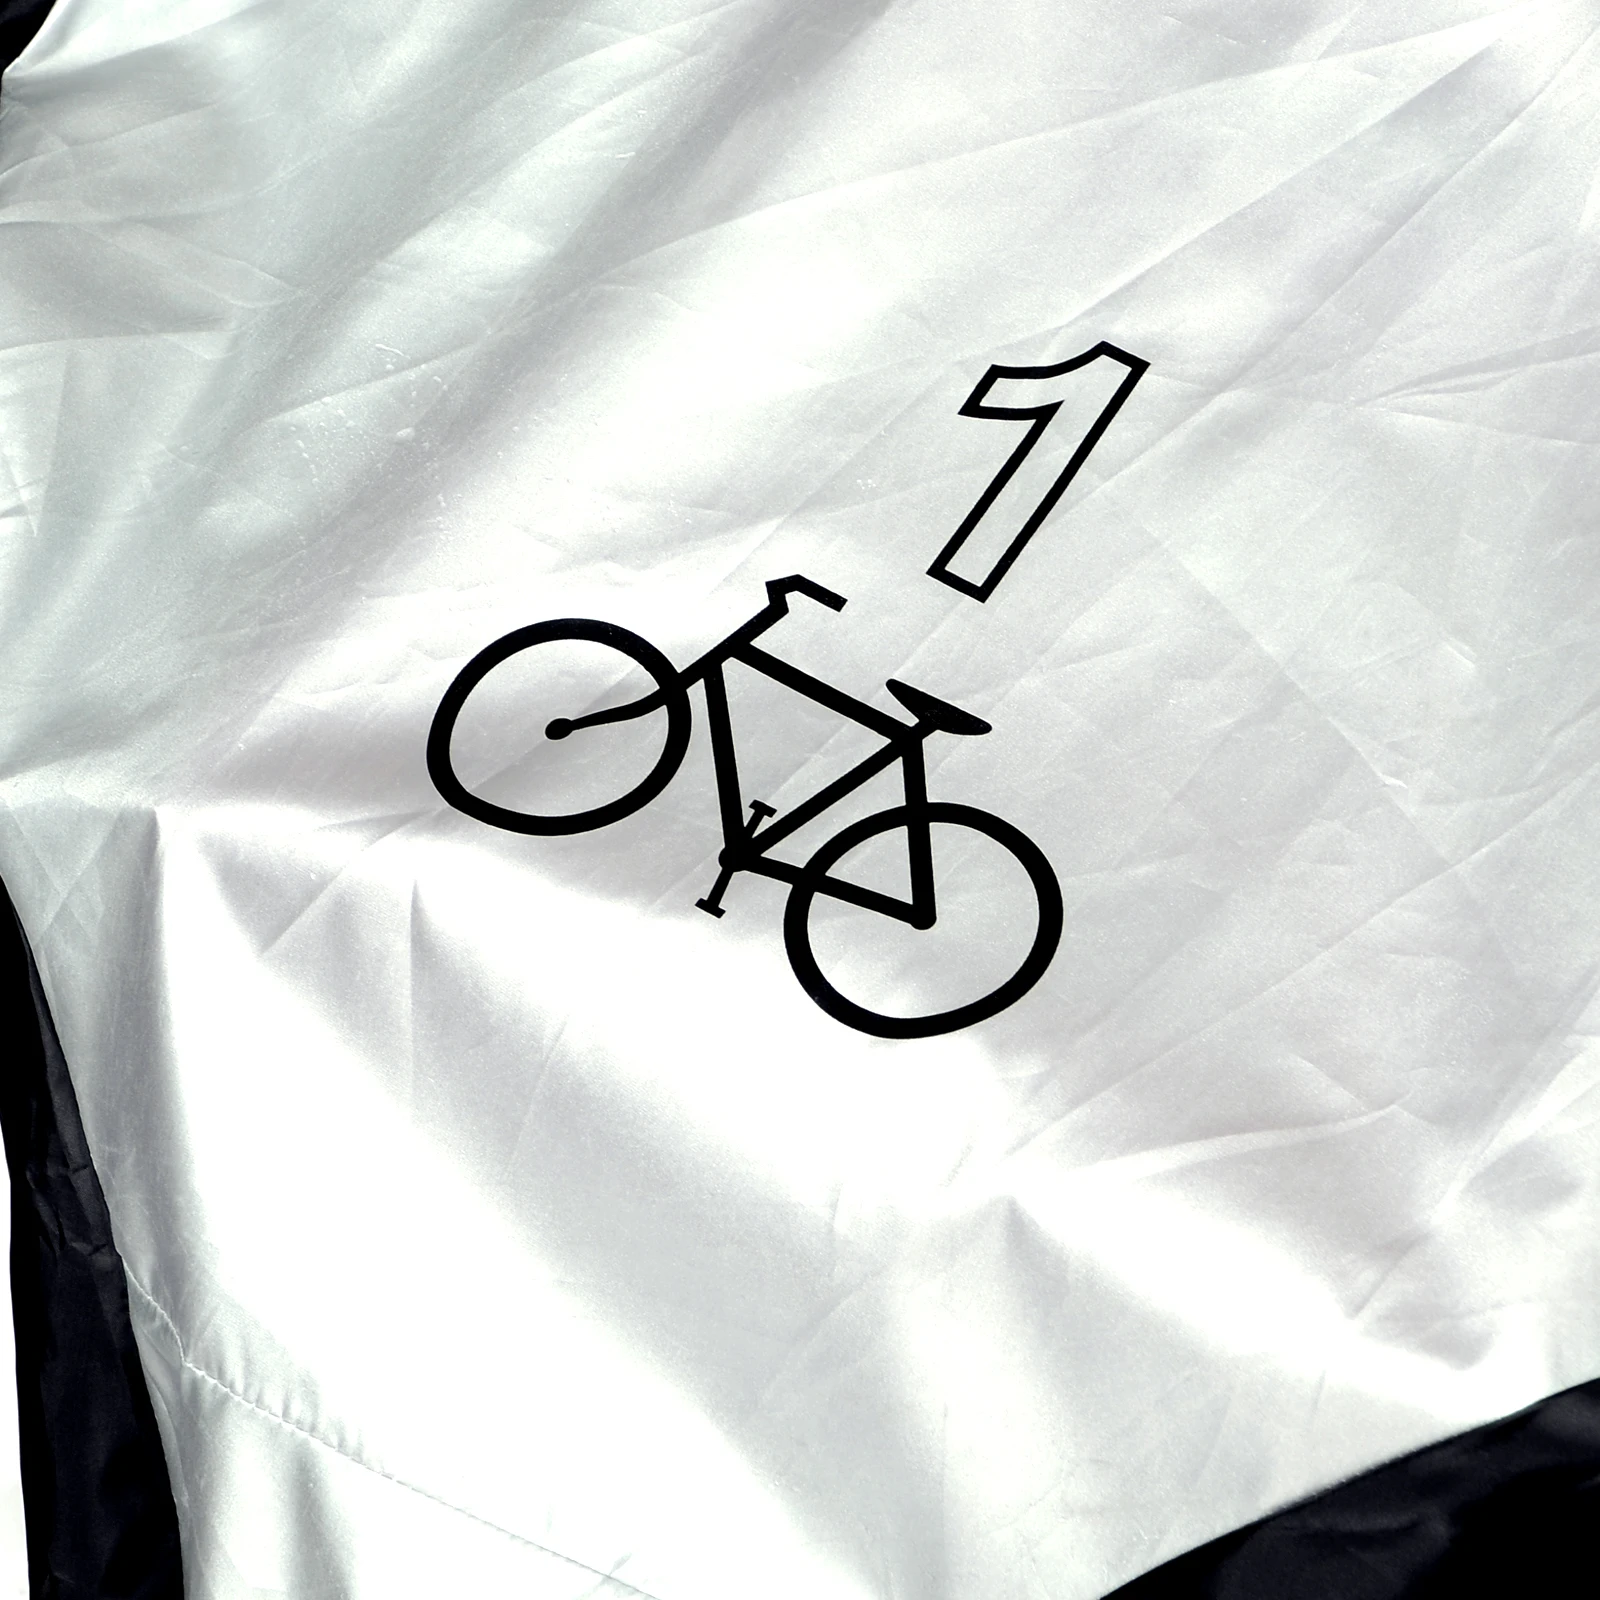 Велосипед дождь водонепроницаемый чехол от пыли уличный протектор для скутеров серый для велосипеда утилита Велоспорт Открытый чехол от дождя на велосипед - Цвет: Black and Silver(S)